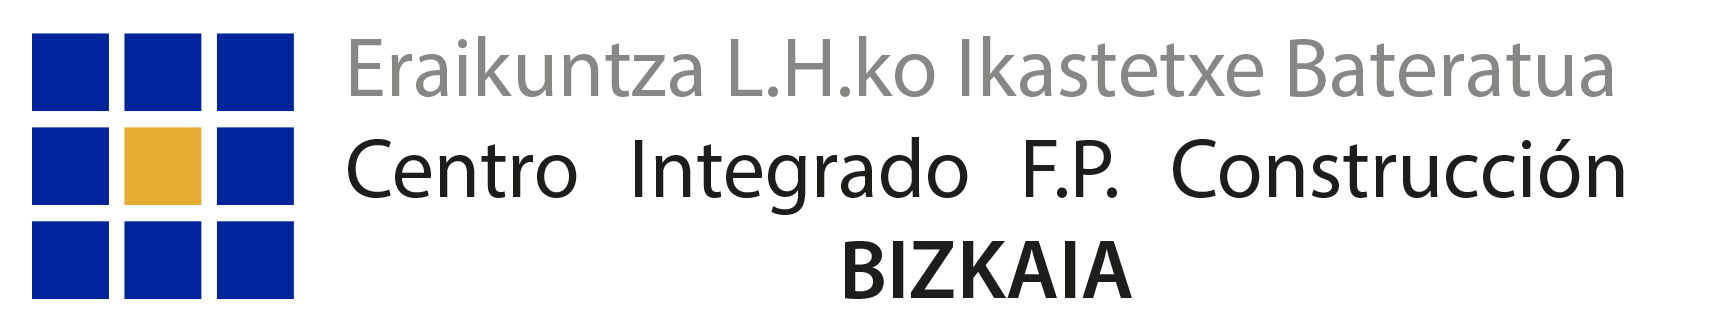 logo-consntruccion-bizkaia-2